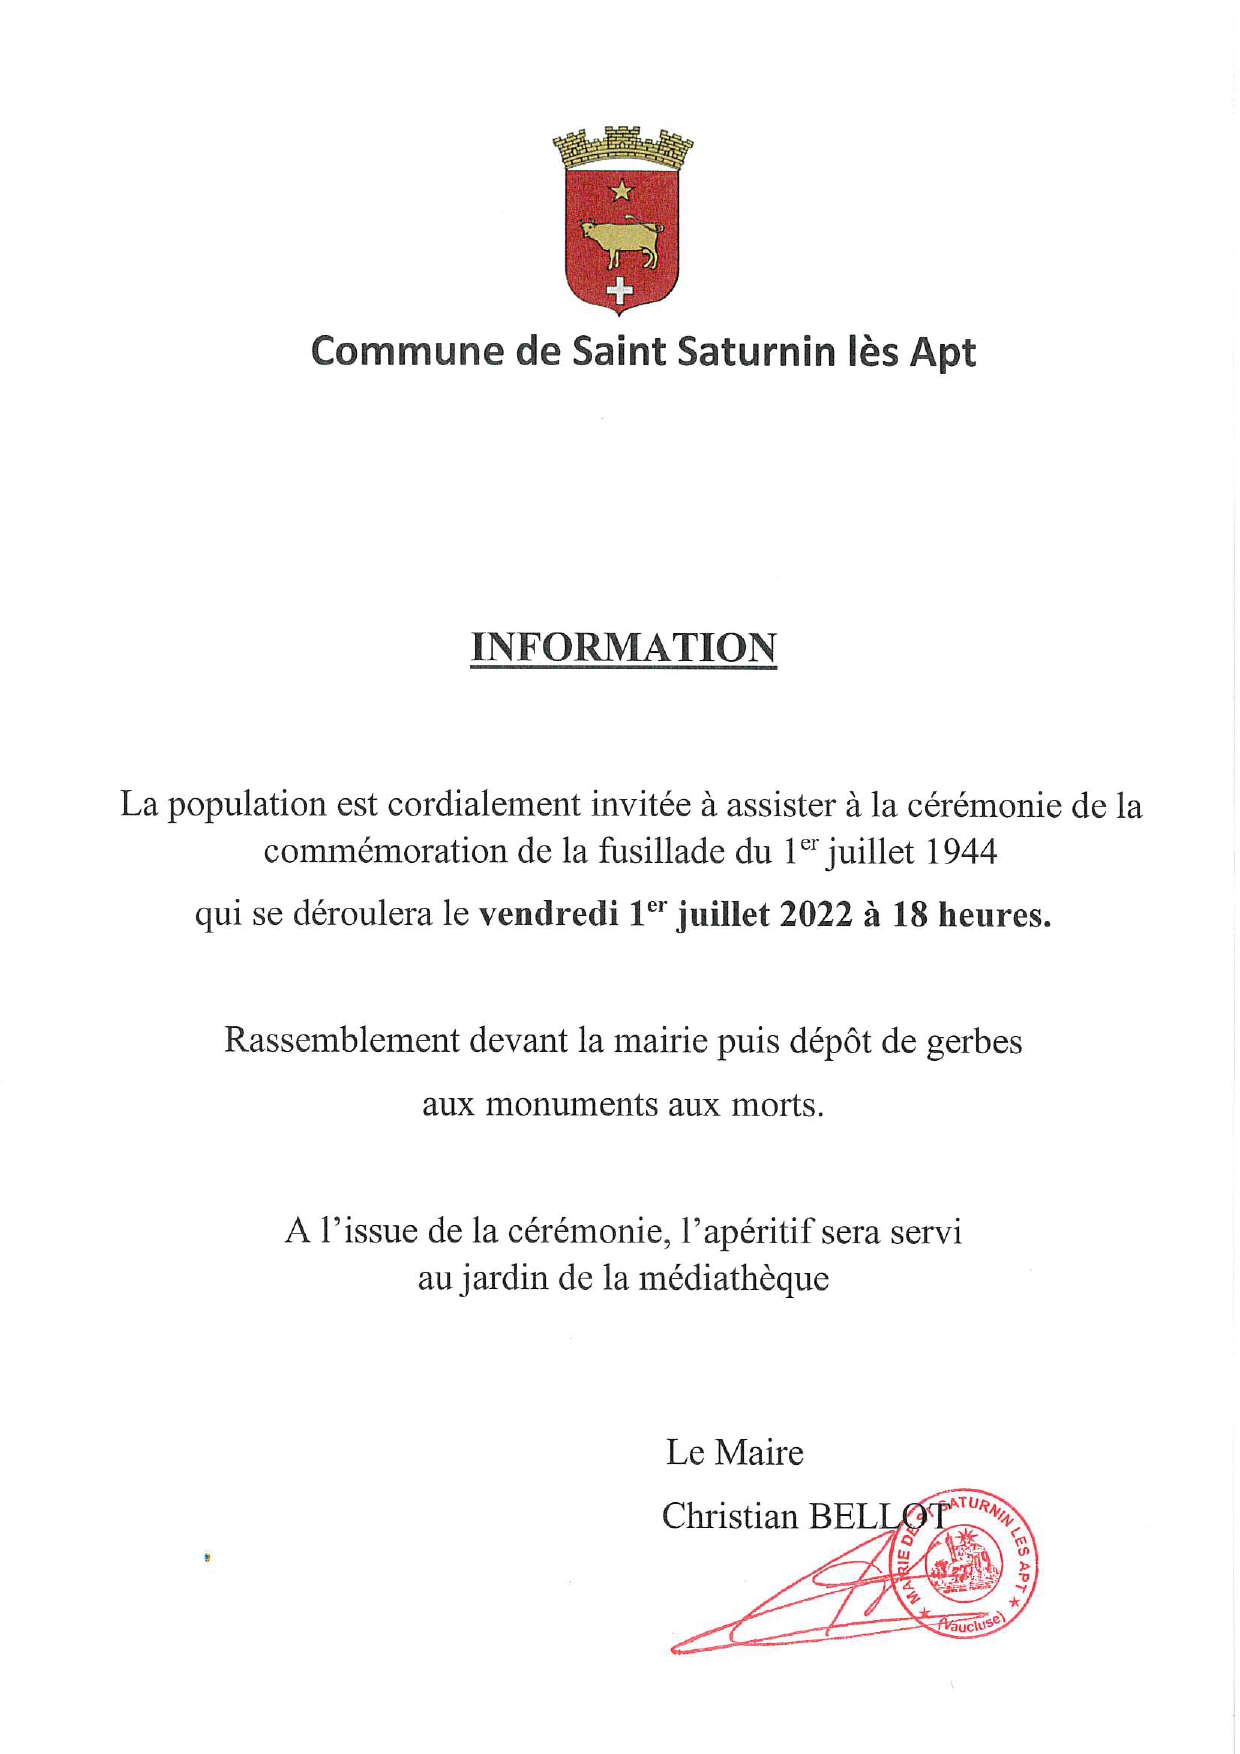 INVITATION COMMÉMORATION DU 1ER JUILLET 1944